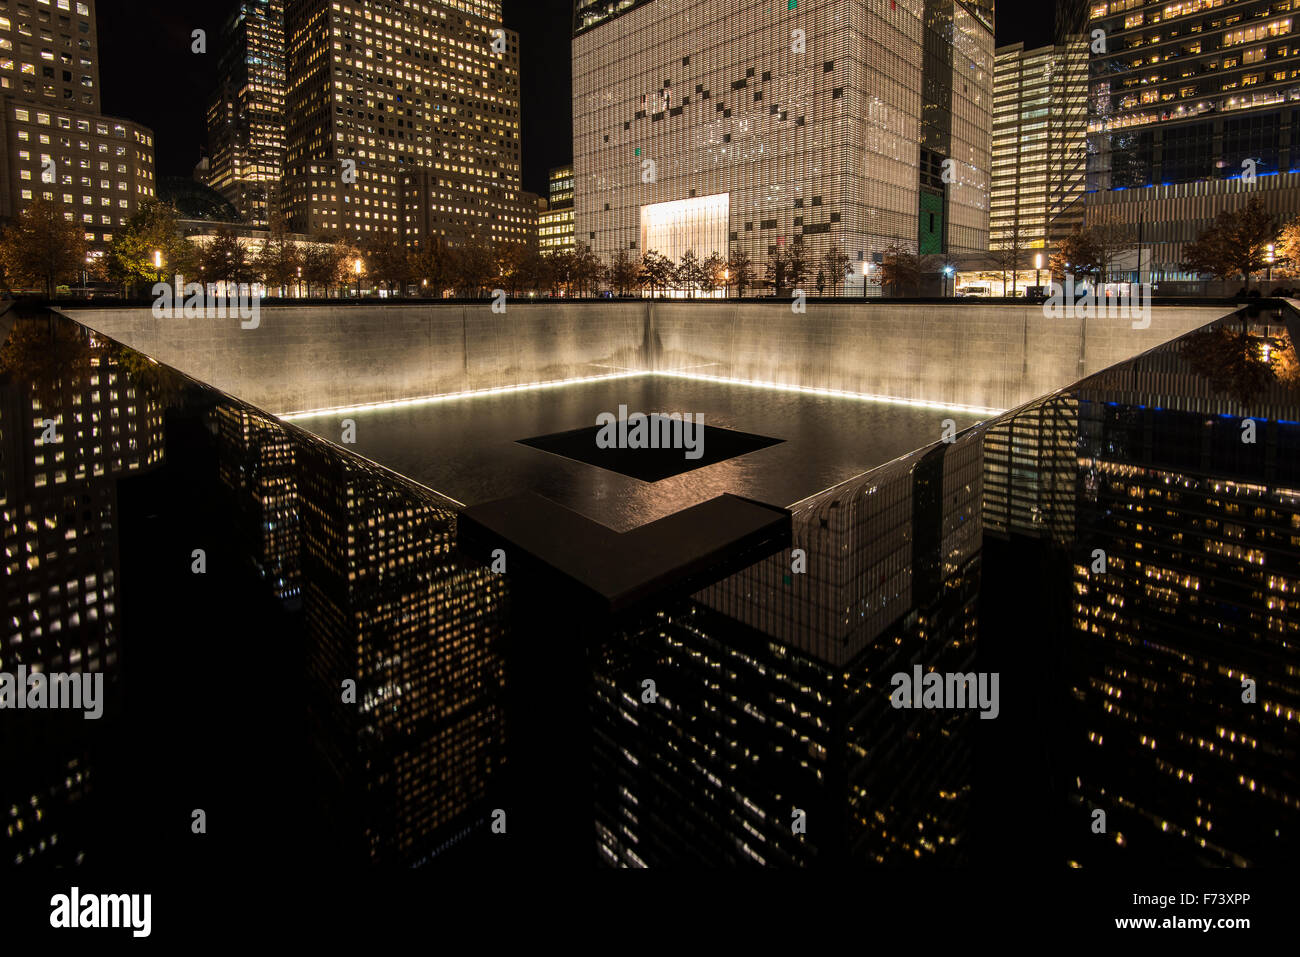 Vue de nuit sur le bassin nord Mémorial National du 11 septembre, et de son musée, Lower Manhattan, New York, USA Banque D'Images